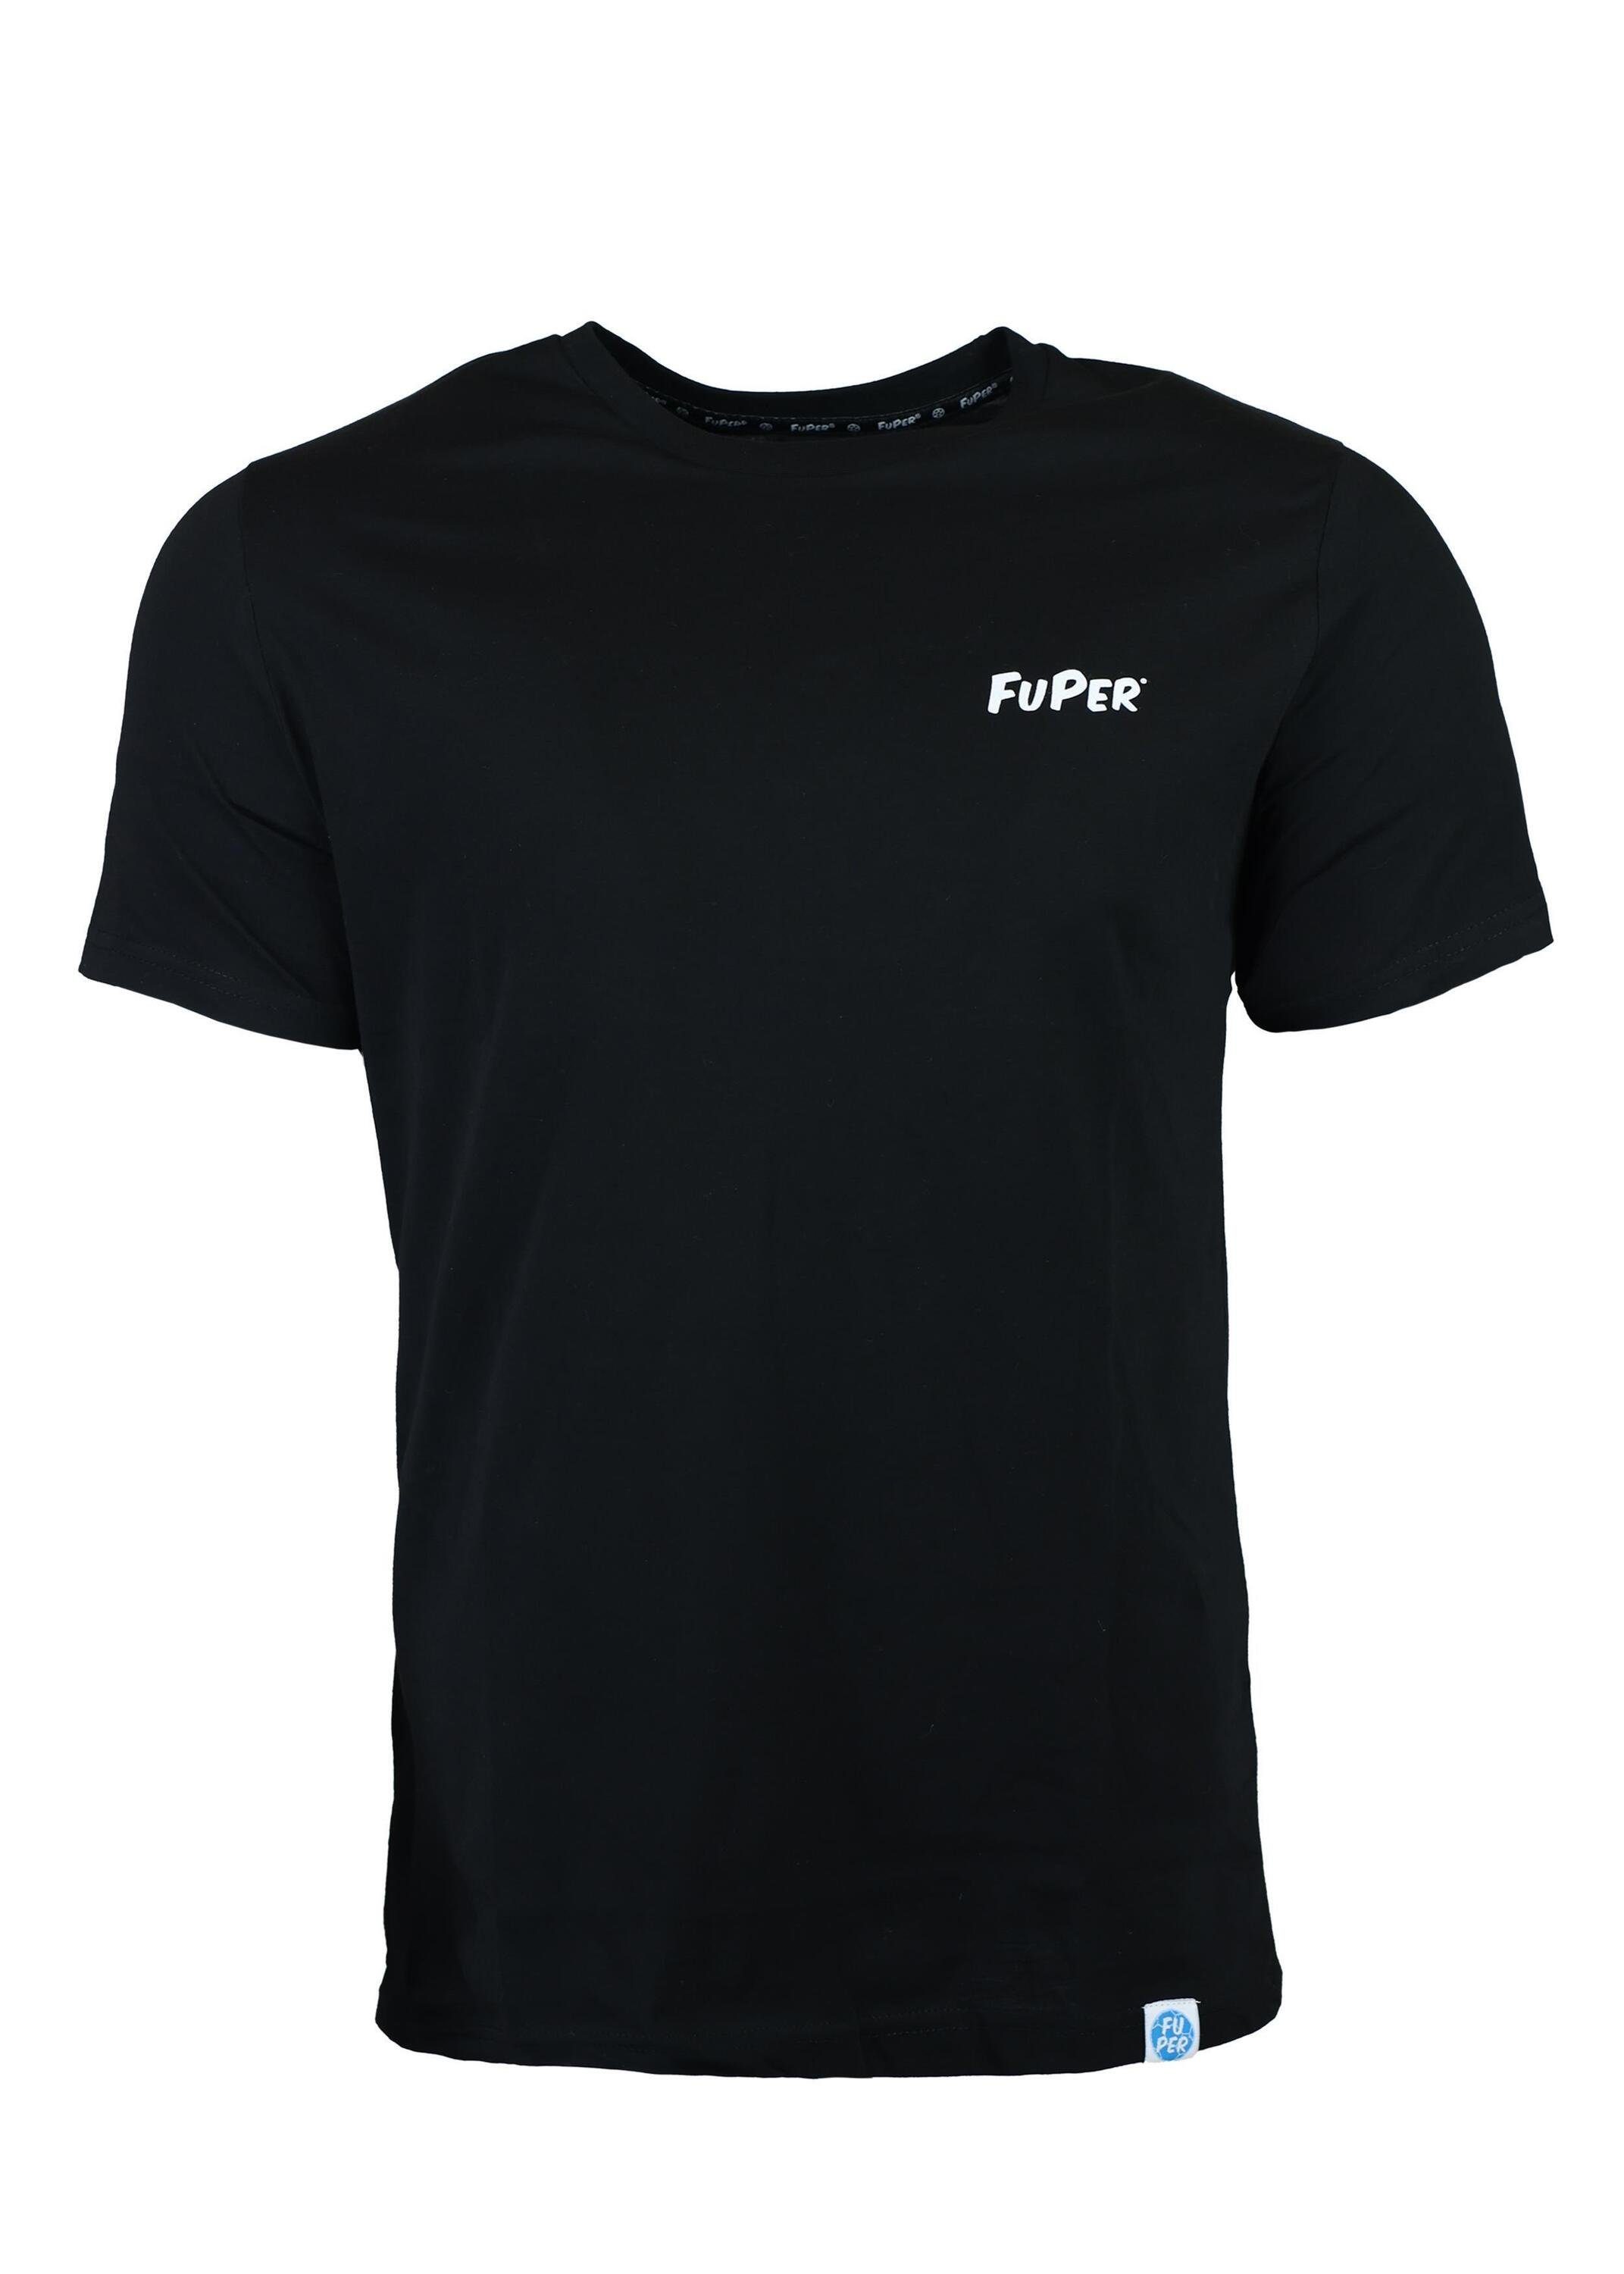 Jugend FuPer für T-Shirt Luis Kinder, Baumwolle, Fußball, aus Black